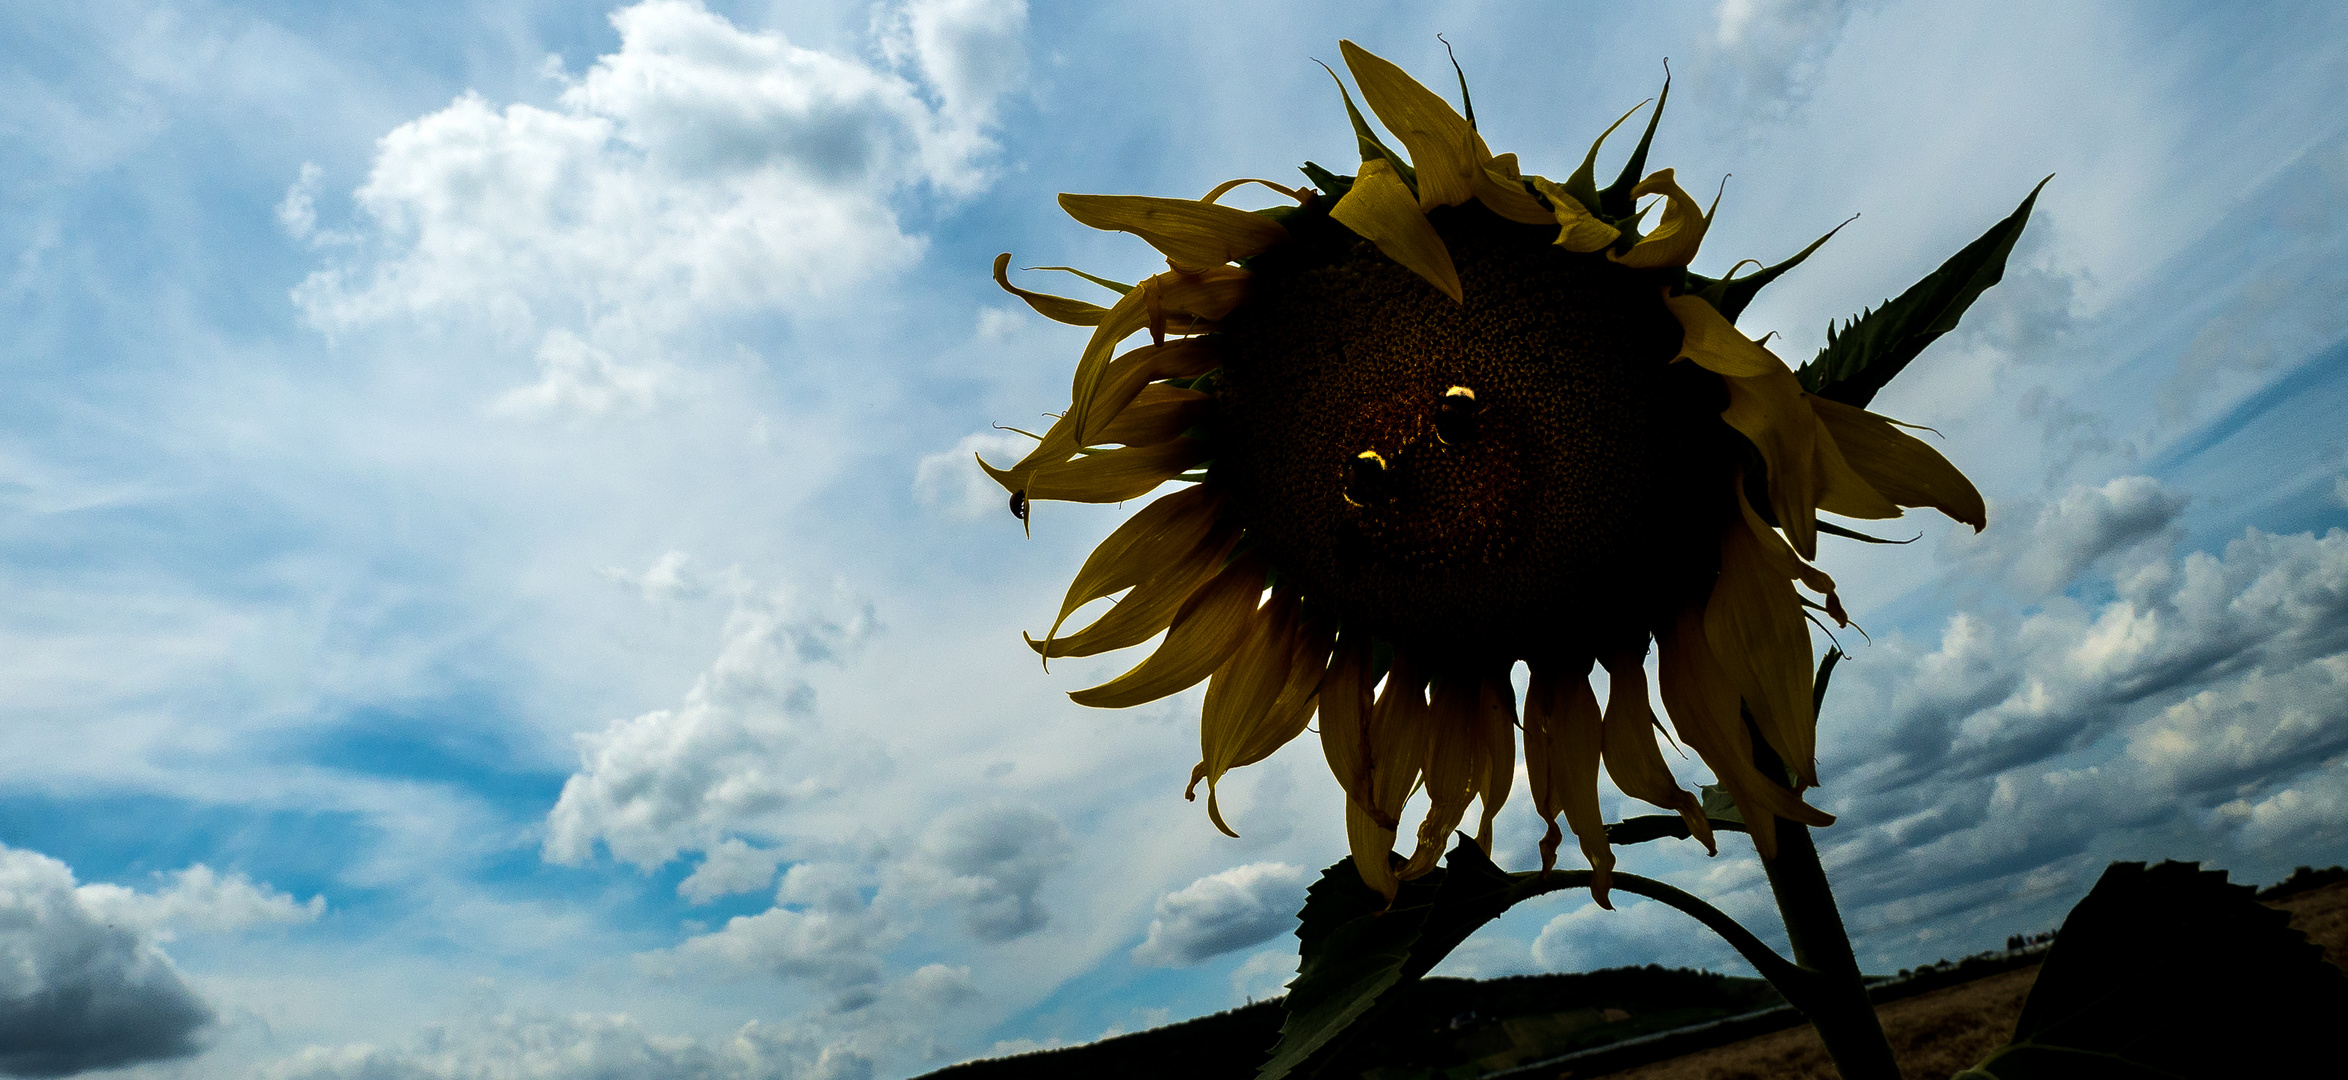 Der  gutmütige Sonnenblumen-Geist